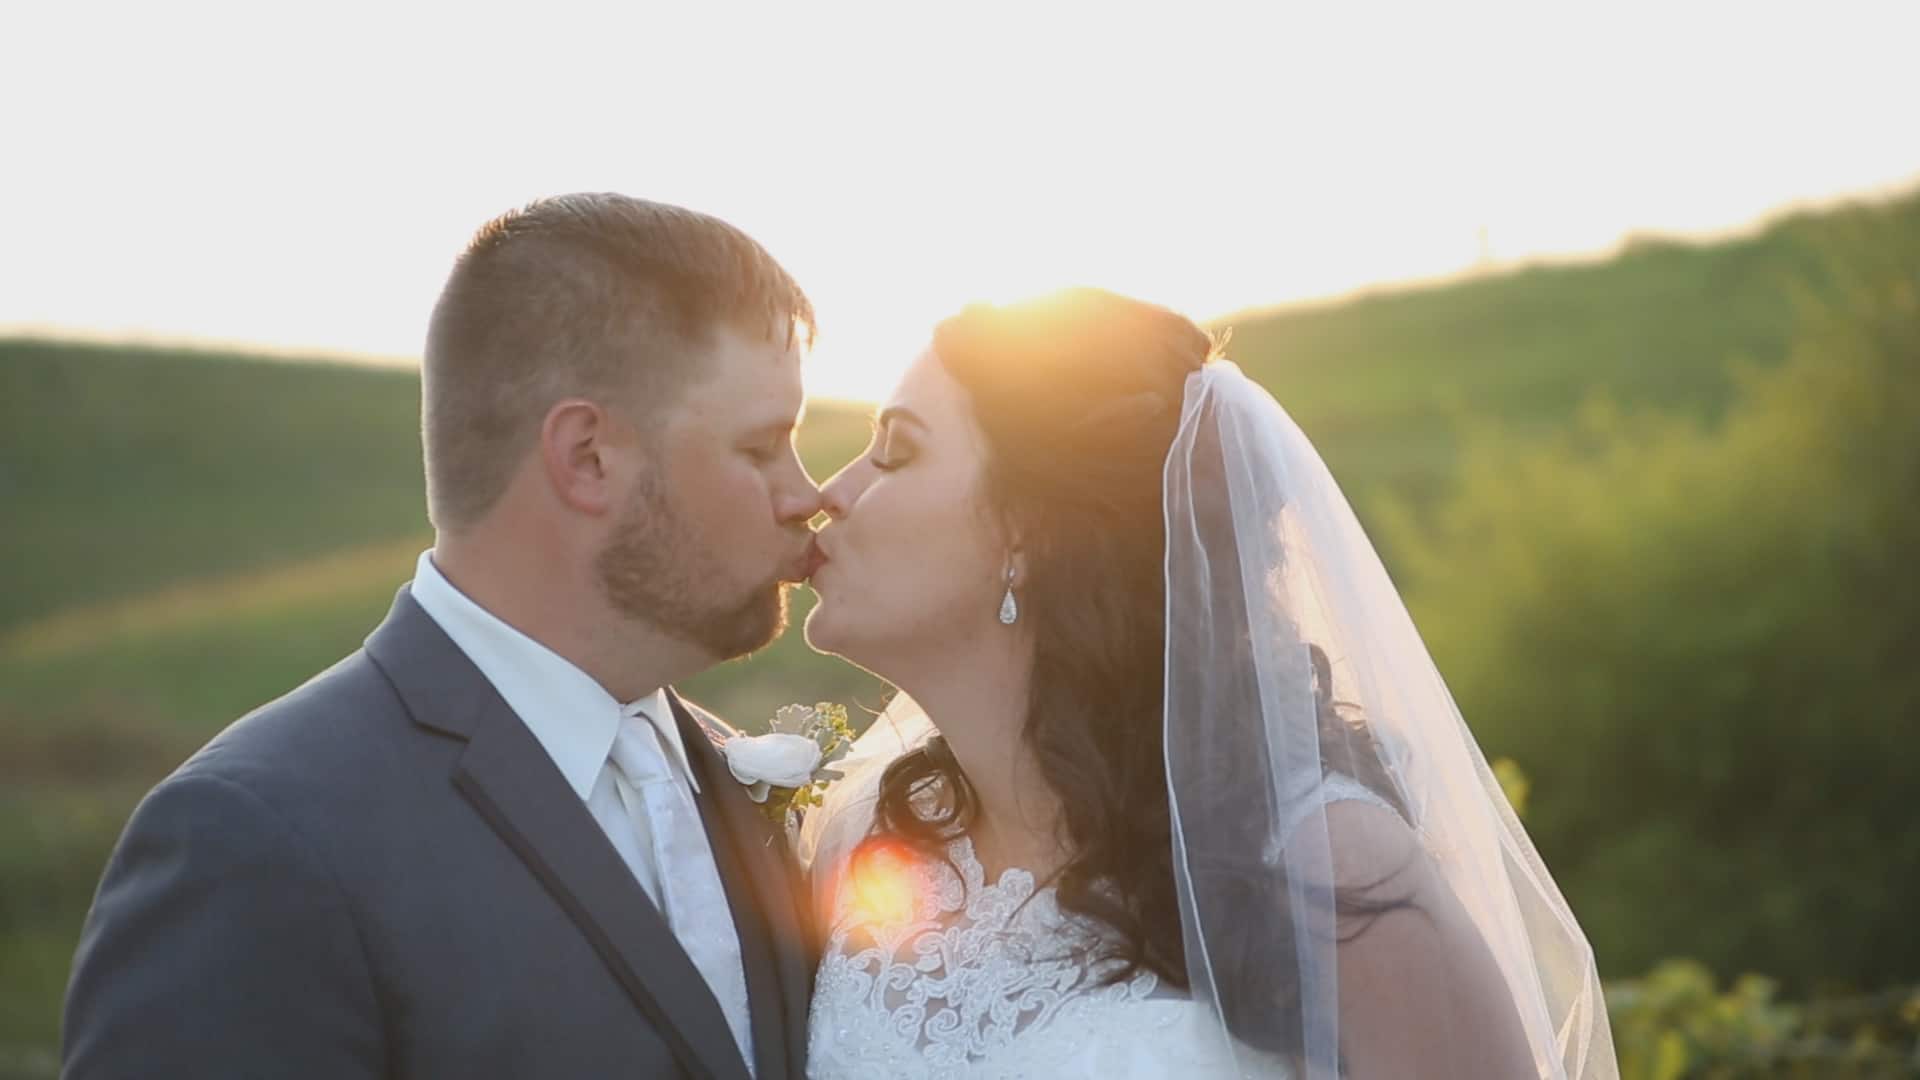 Wedding Video Highlights: Robert + Lindie